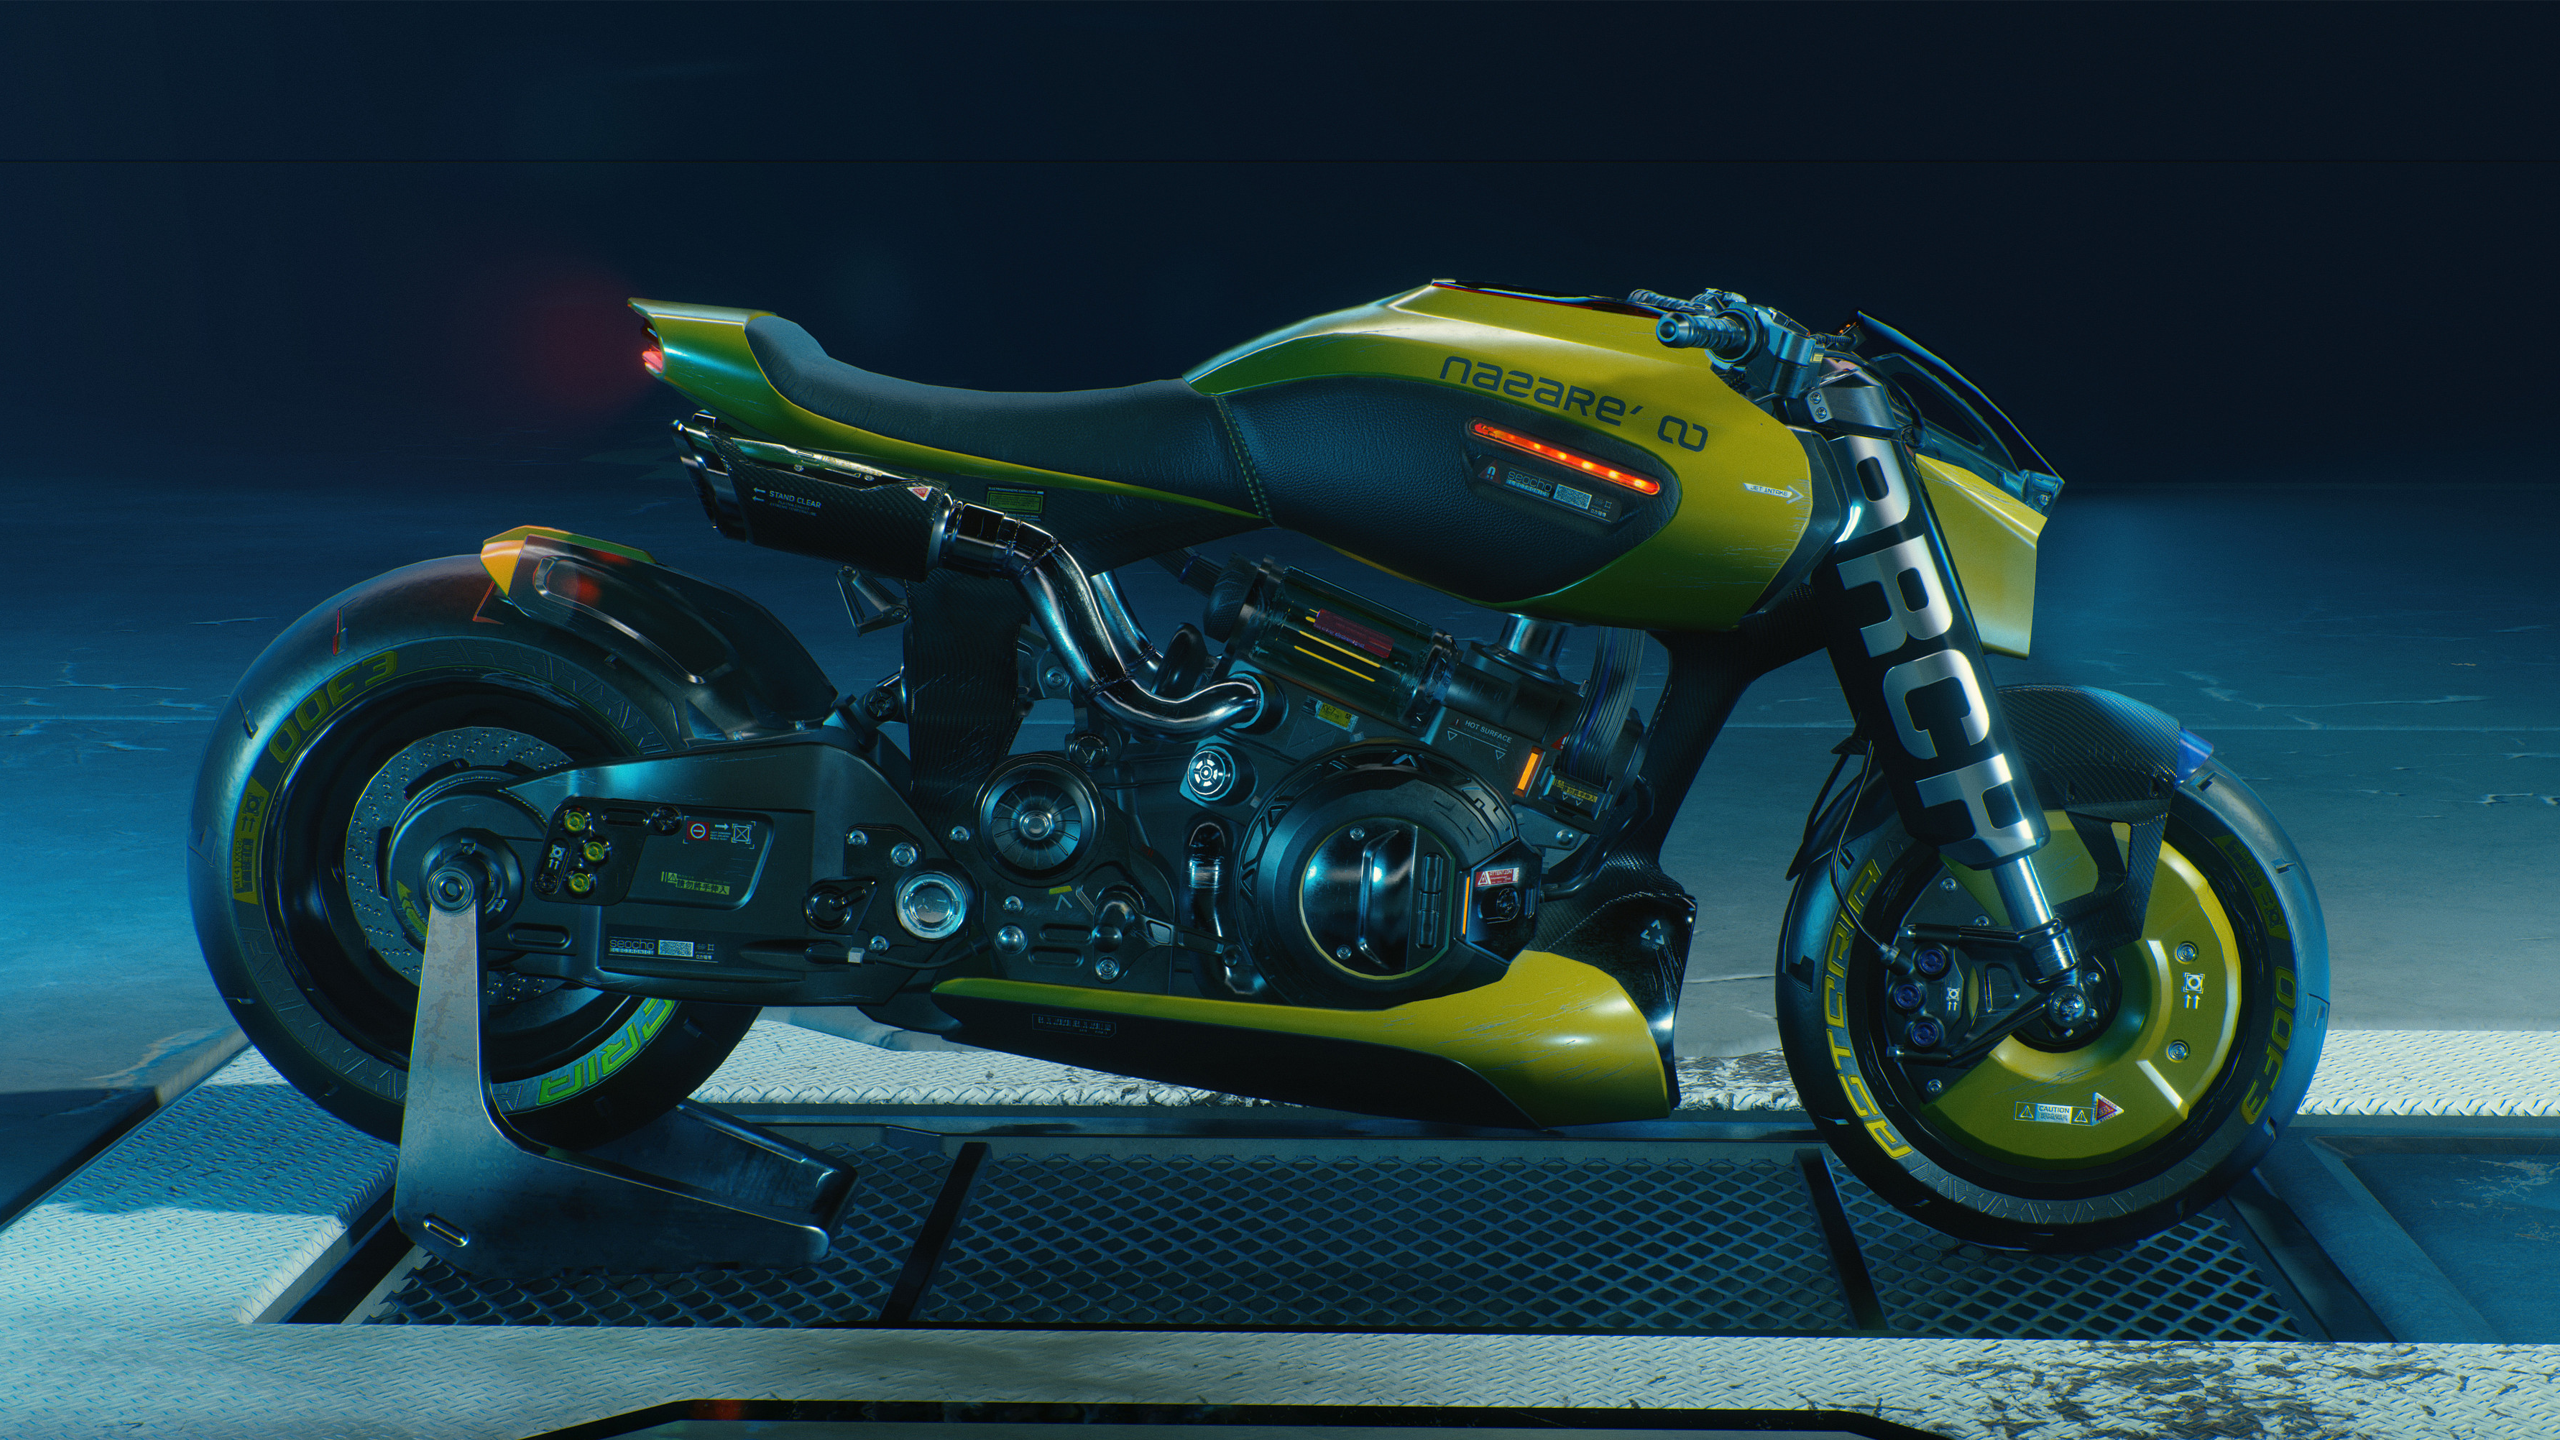 ARCH Motorcycle Video Games Video Game Art Cyberpunk Cyberpunk 2077 Futuristic ARCH Nazare Digital A 2560x1440